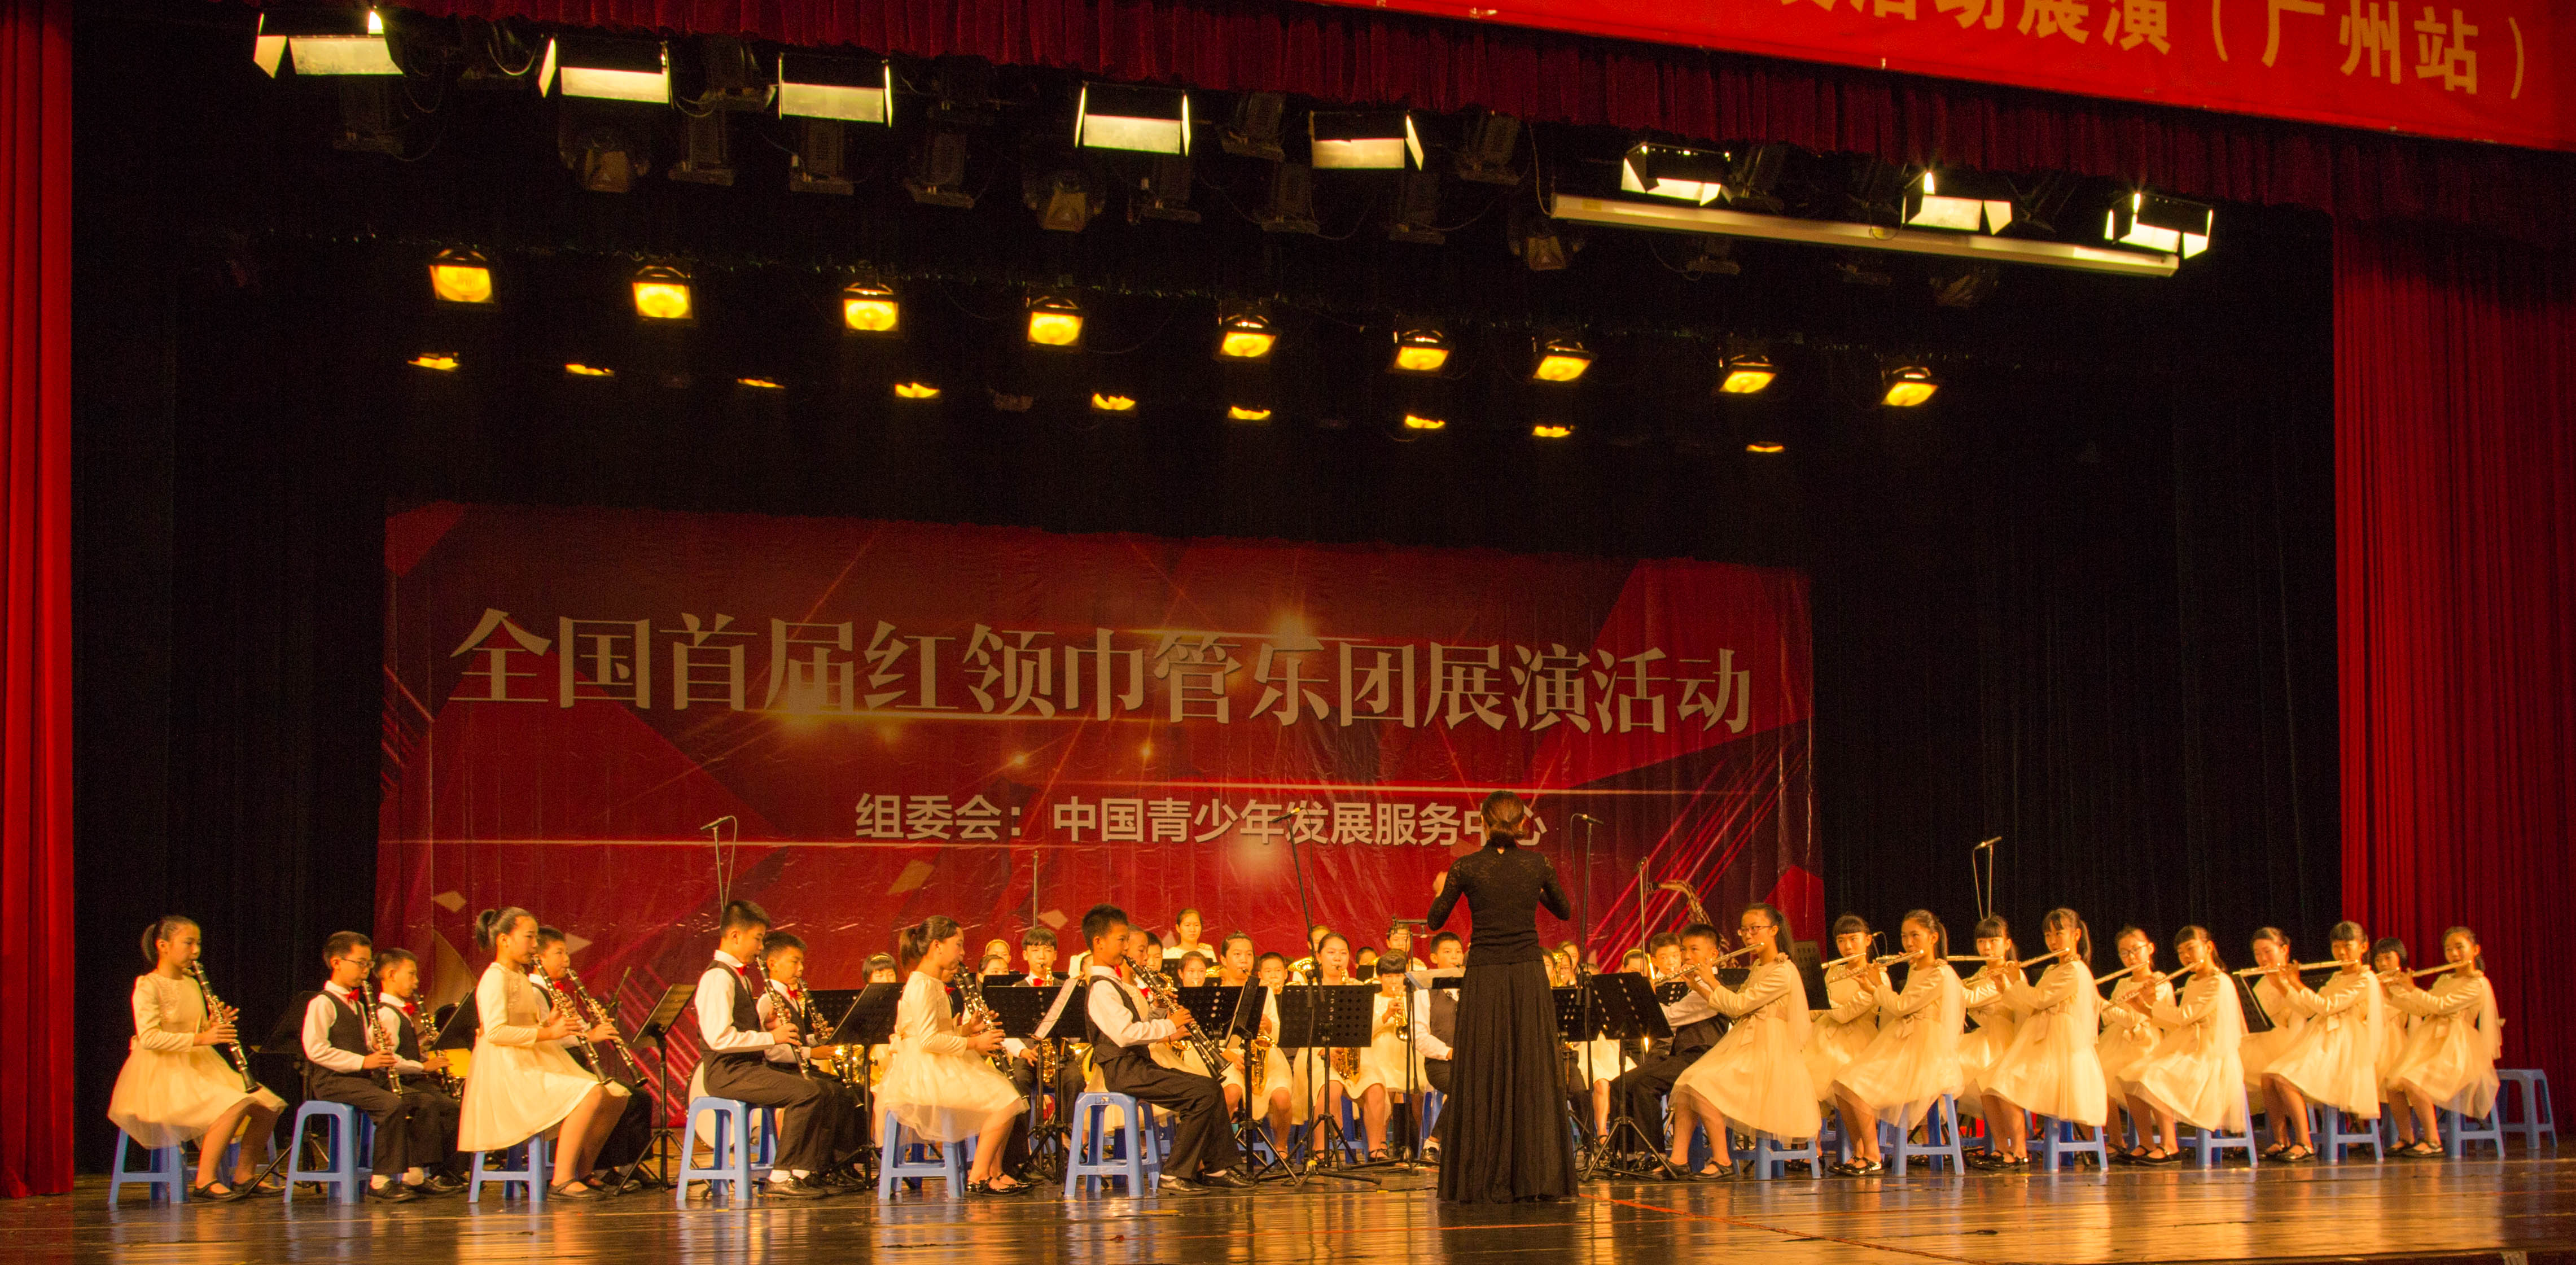 6、管乐团参加由中国青少年发展服务中心举办的全国首届红岭巾管乐团展演活动.jpg